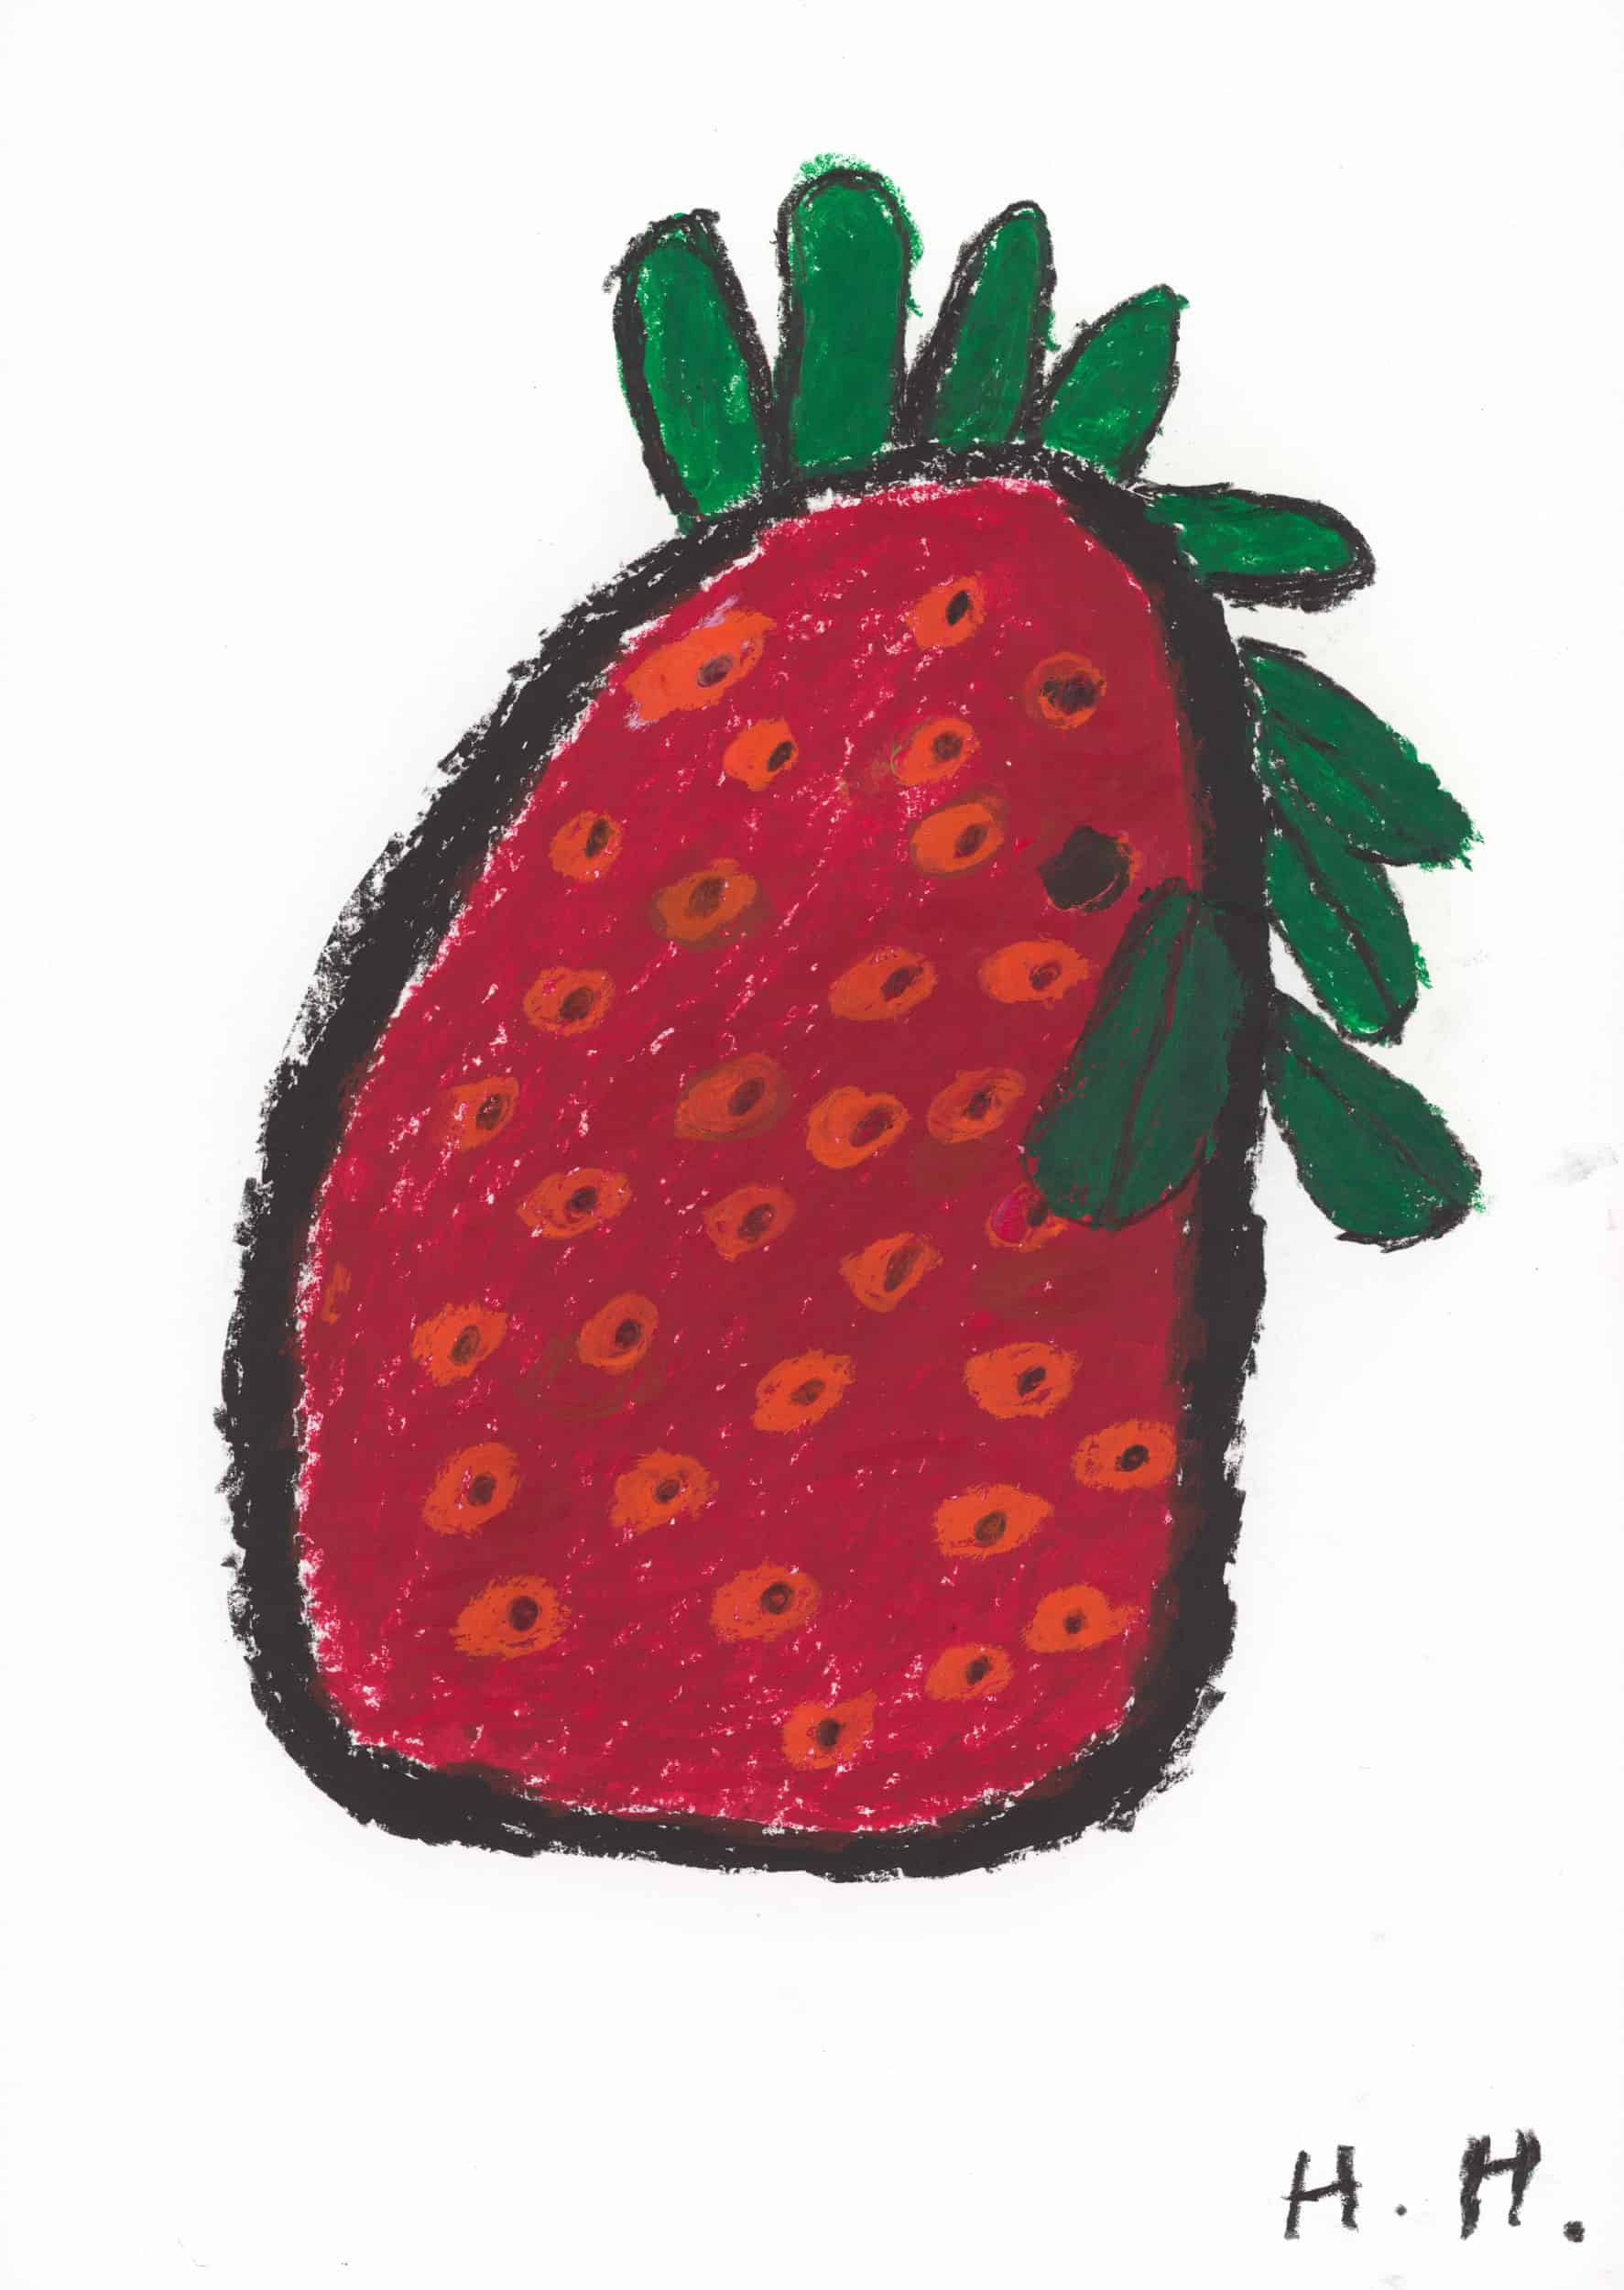 hladisch helmut - Erdbeere / Strawberry